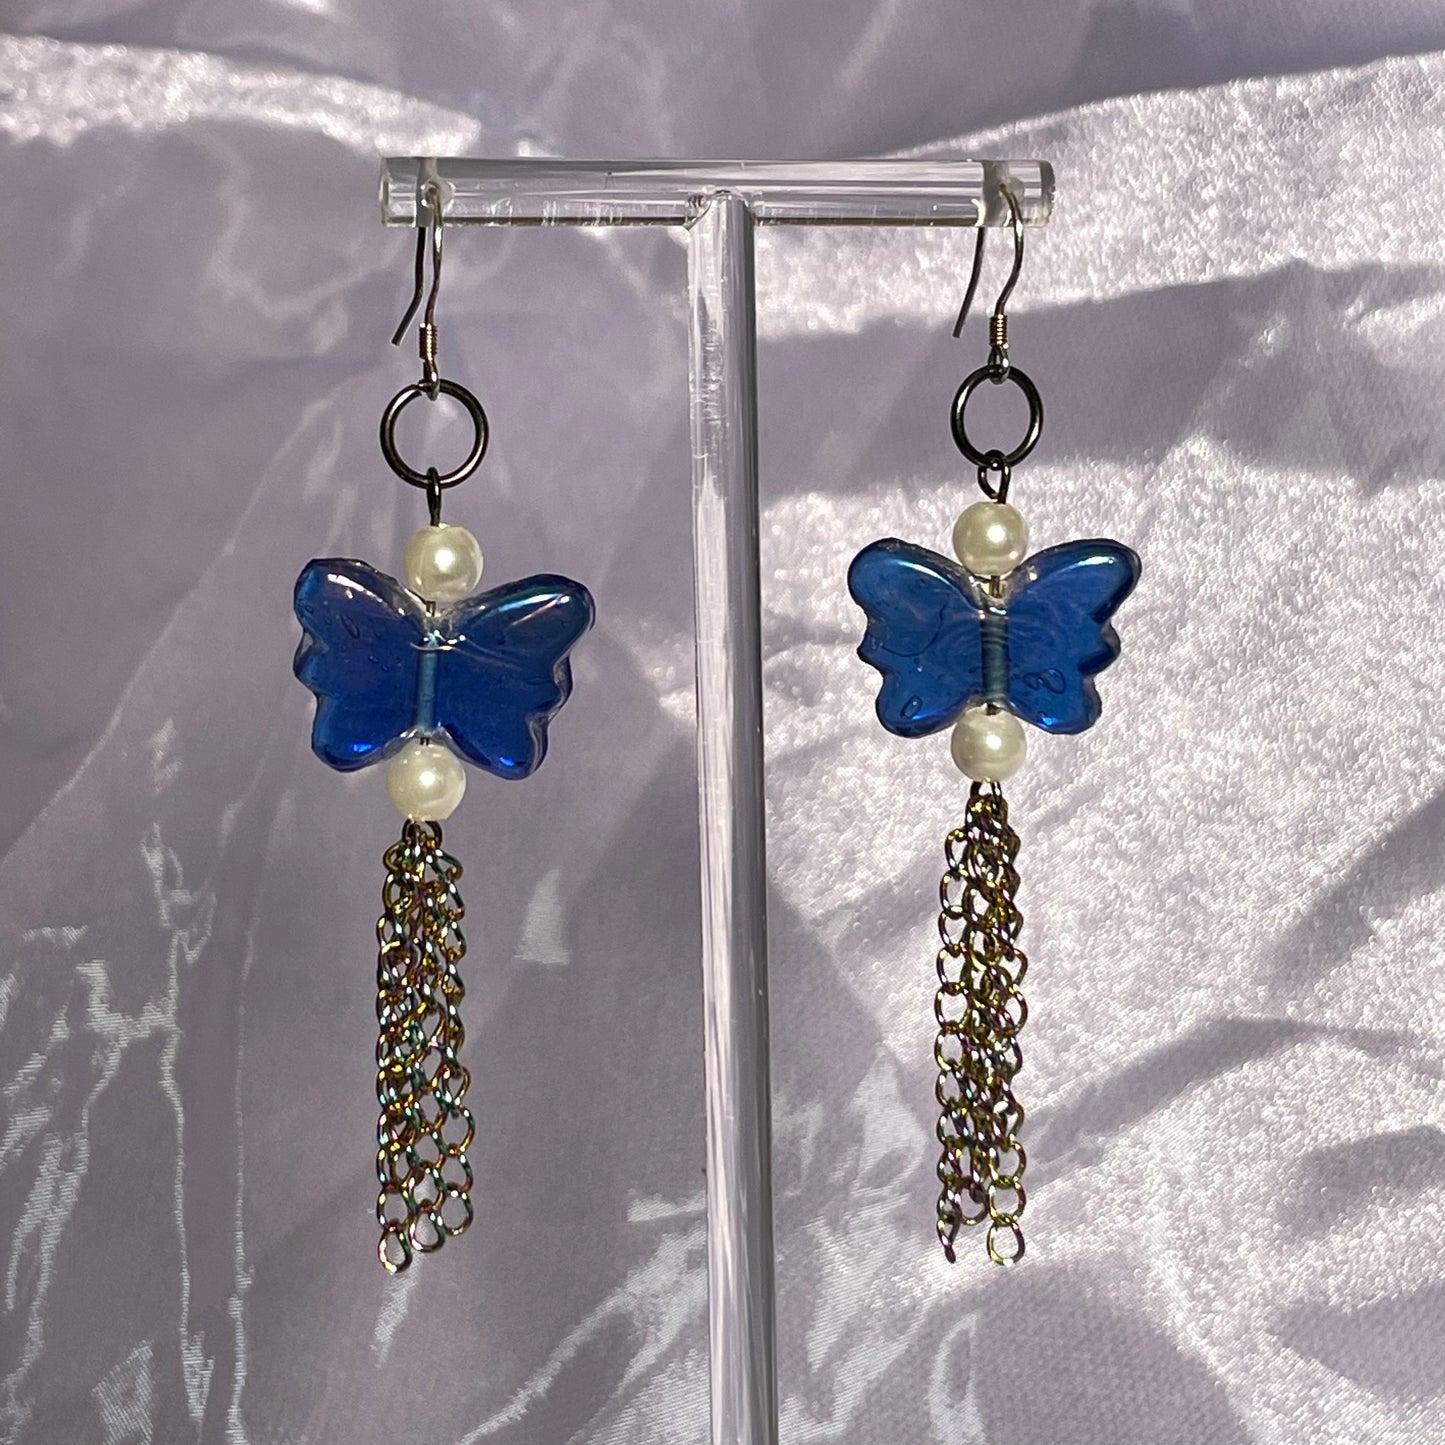 Bluest butterfly earrings